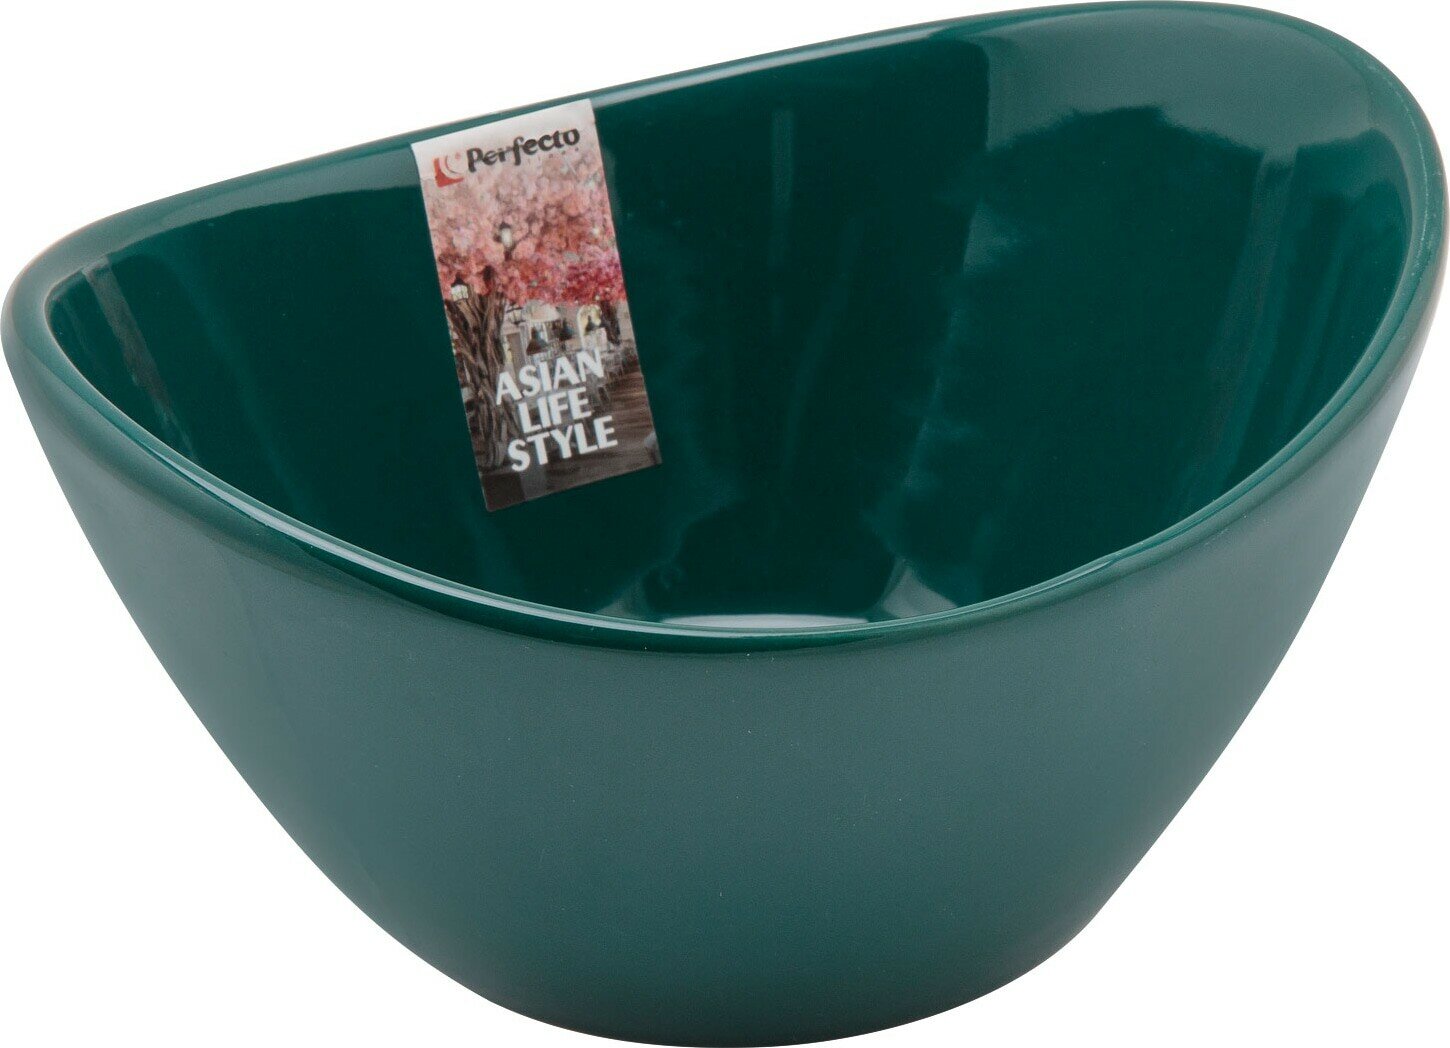 Салатник керамический PERFECTO LINEA Asian 15,3х12,5 см зеленый (17-115123)